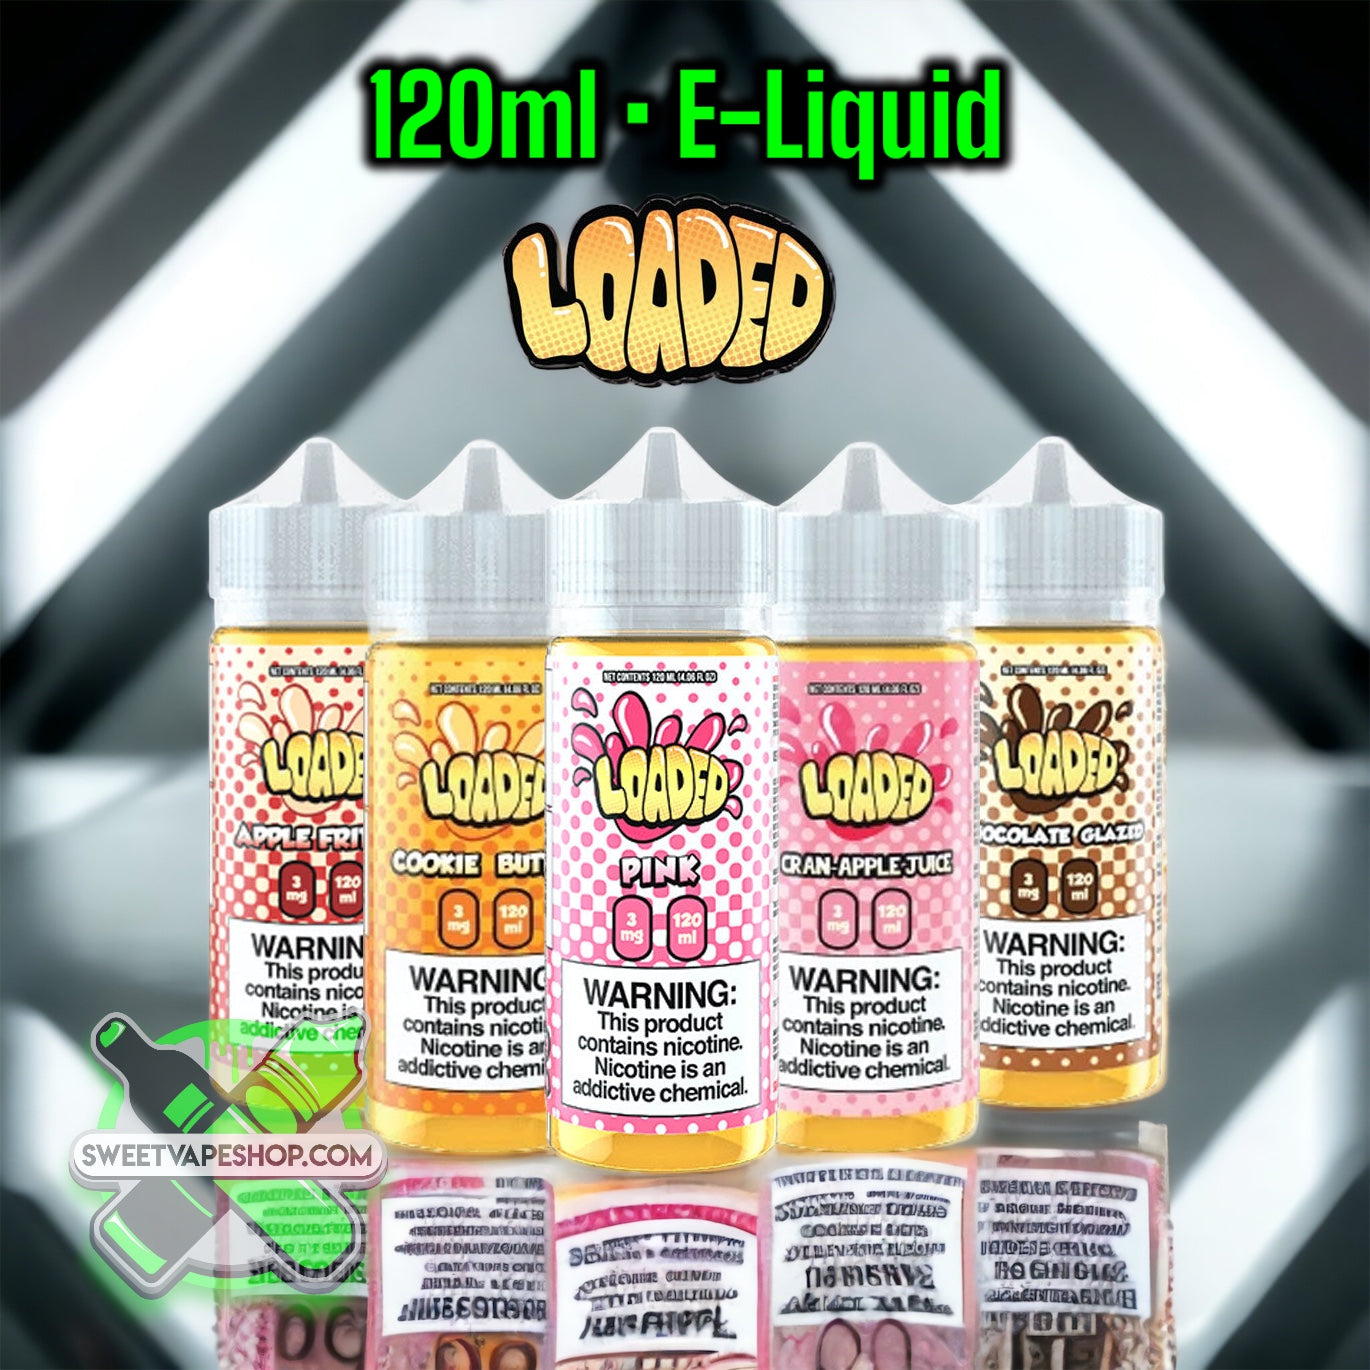 Loaded - 120ml E-Juice